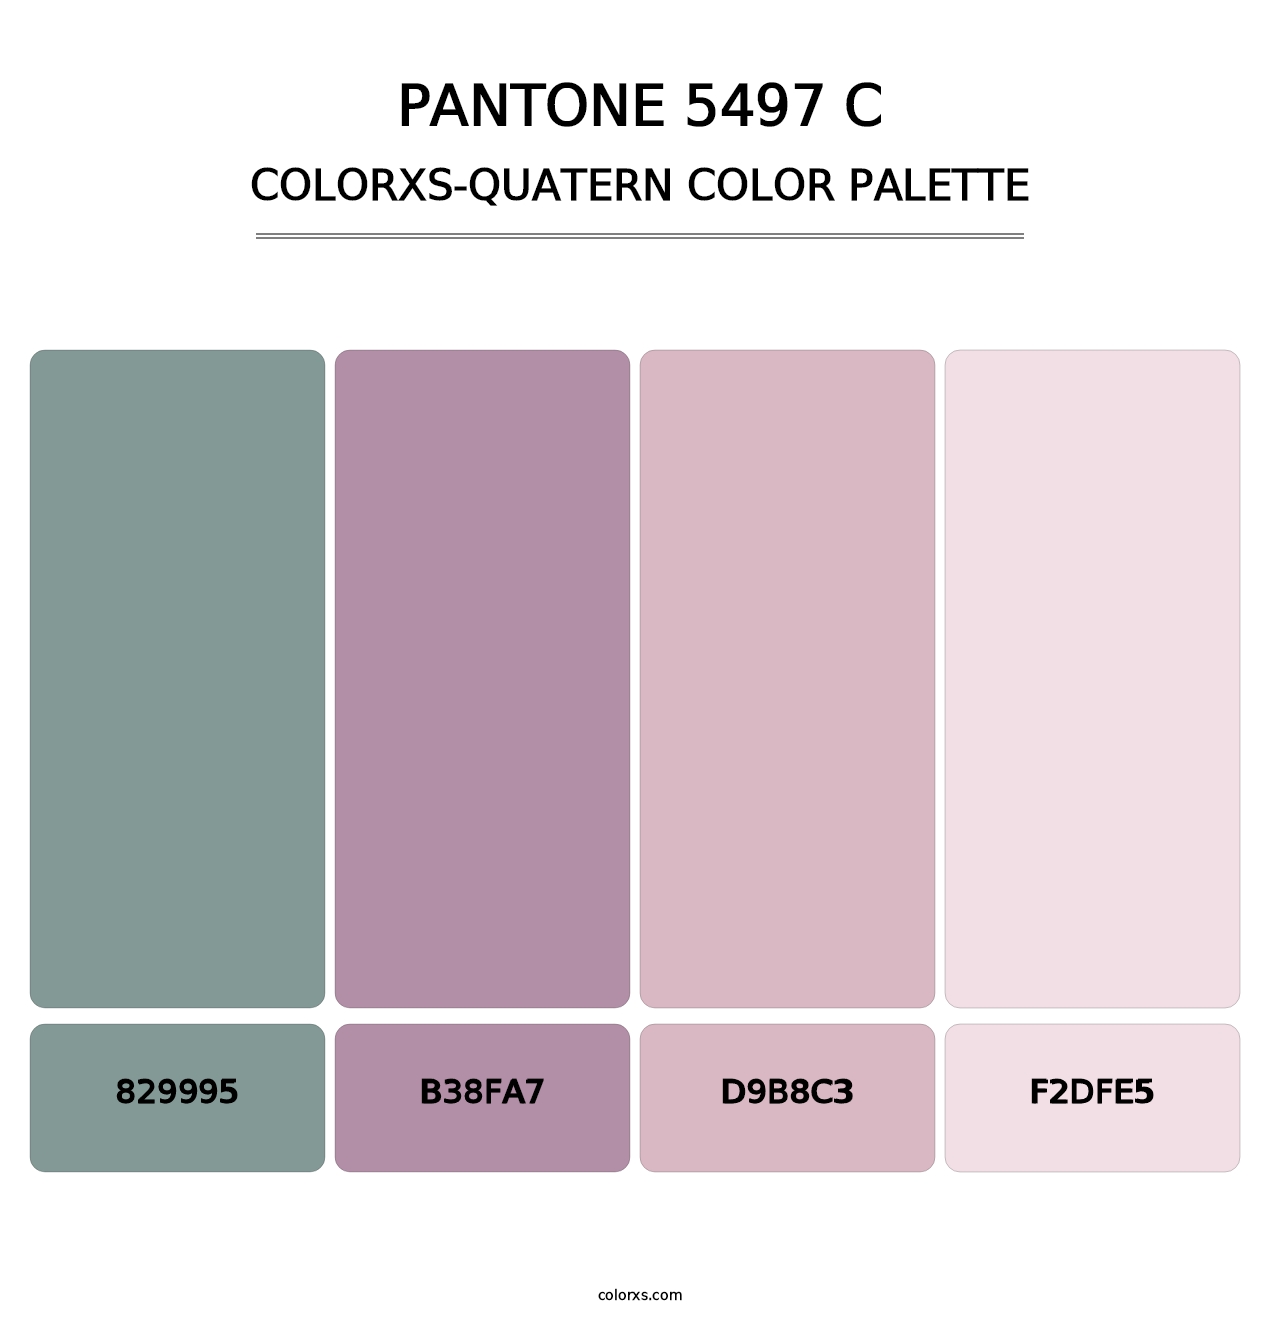 PANTONE 5497 C - Colorxs Quatern Palette